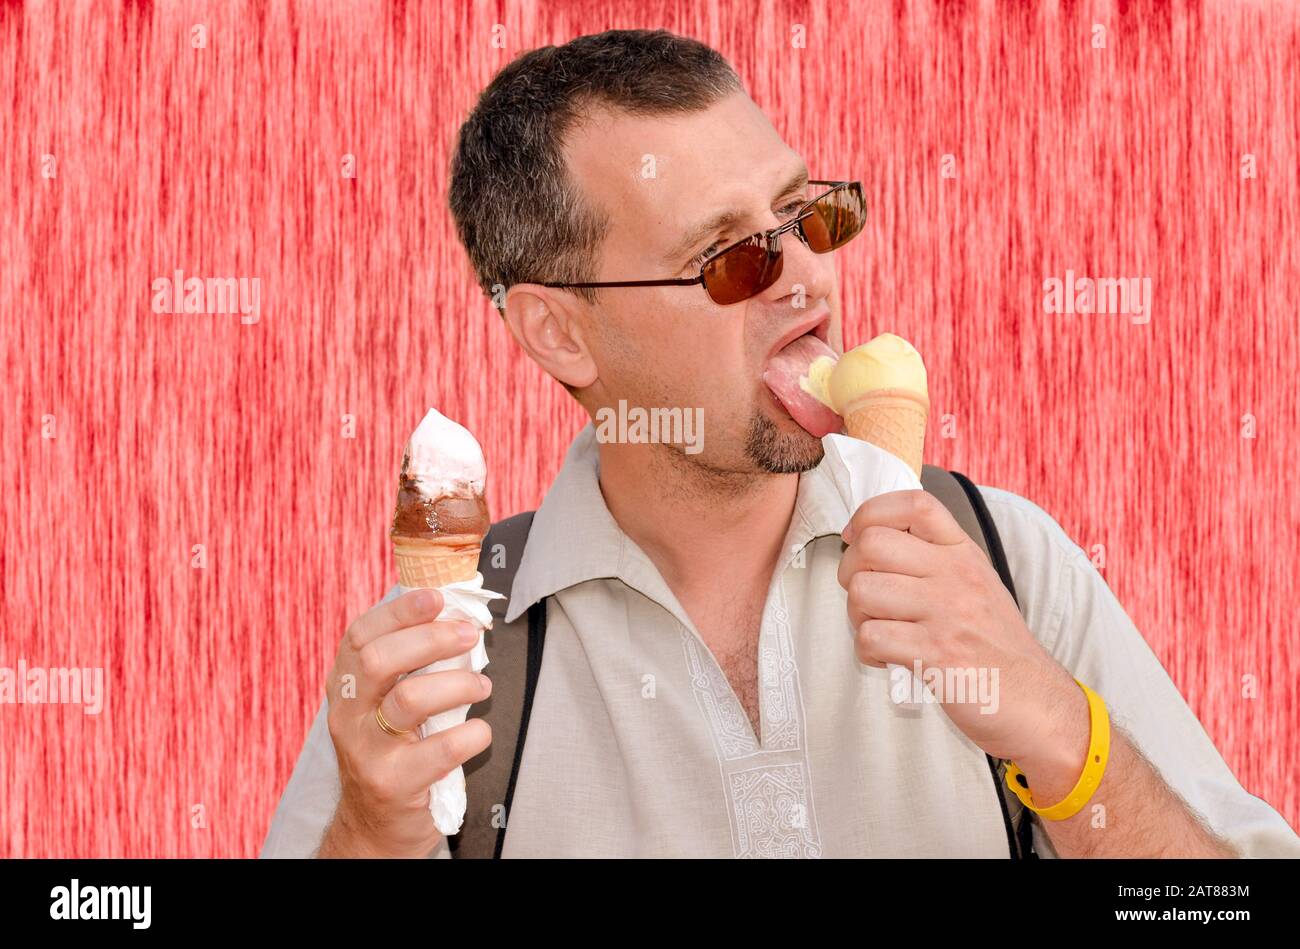 Ritratto di un uomo che mangia due gelati in coni di wafer in entrambe le mani sulla parete rossa di fondo Foto Stock